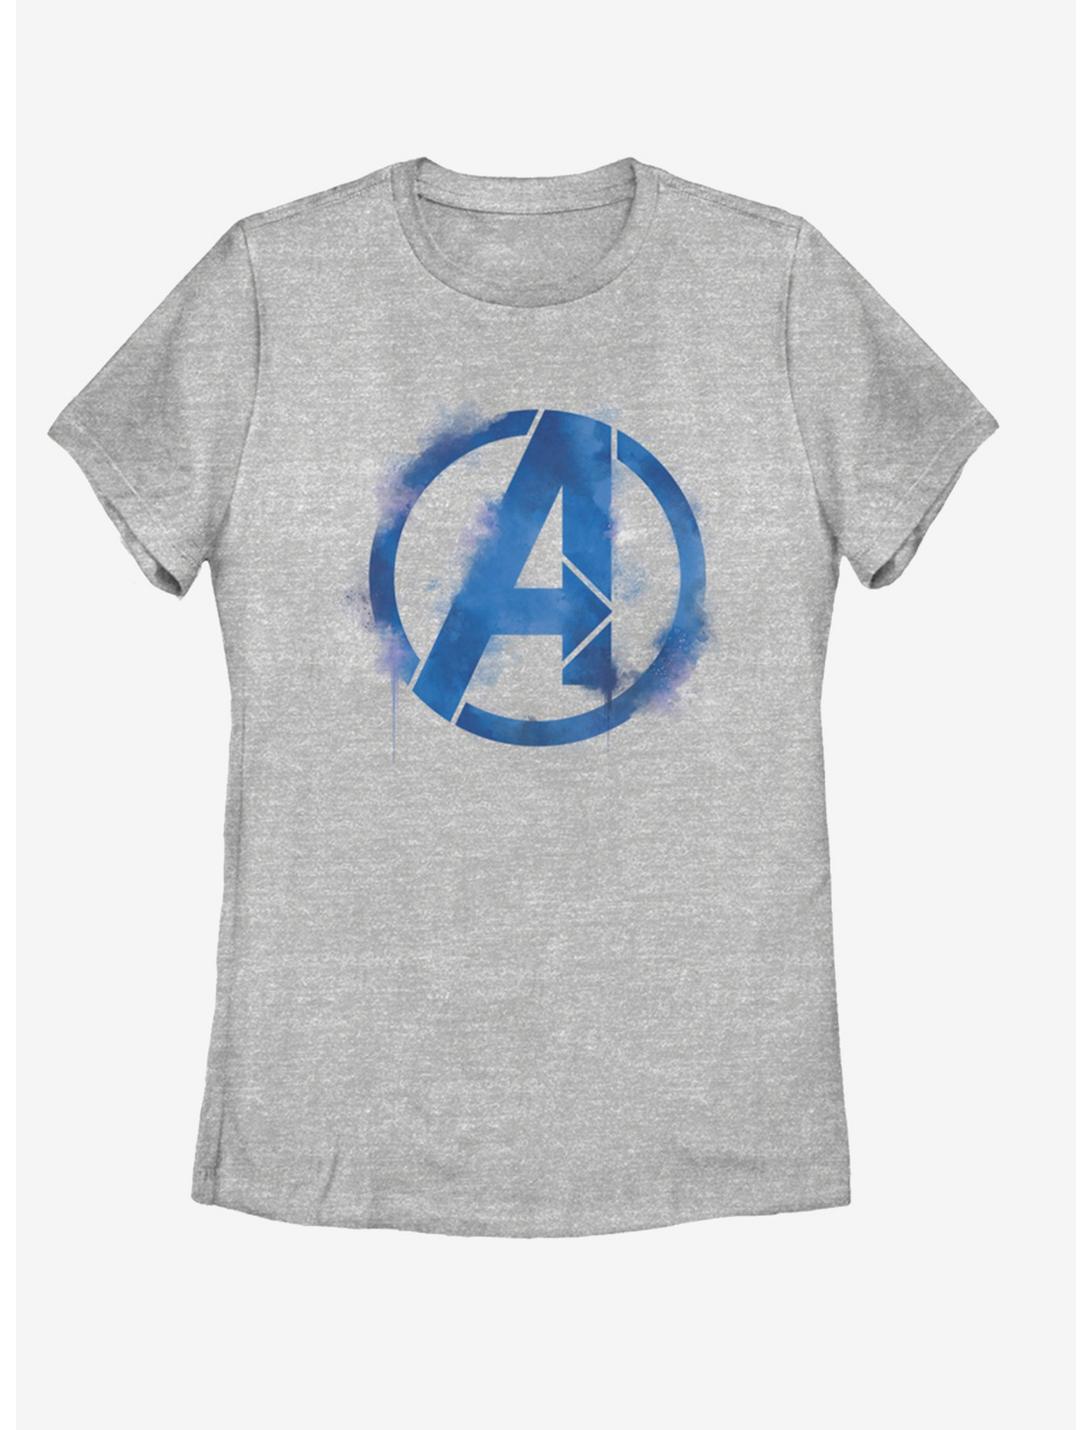 Marvel Avengers: Endgame Avengers Spray Logo Womens T-Shirt, ATH HTR, hi-res